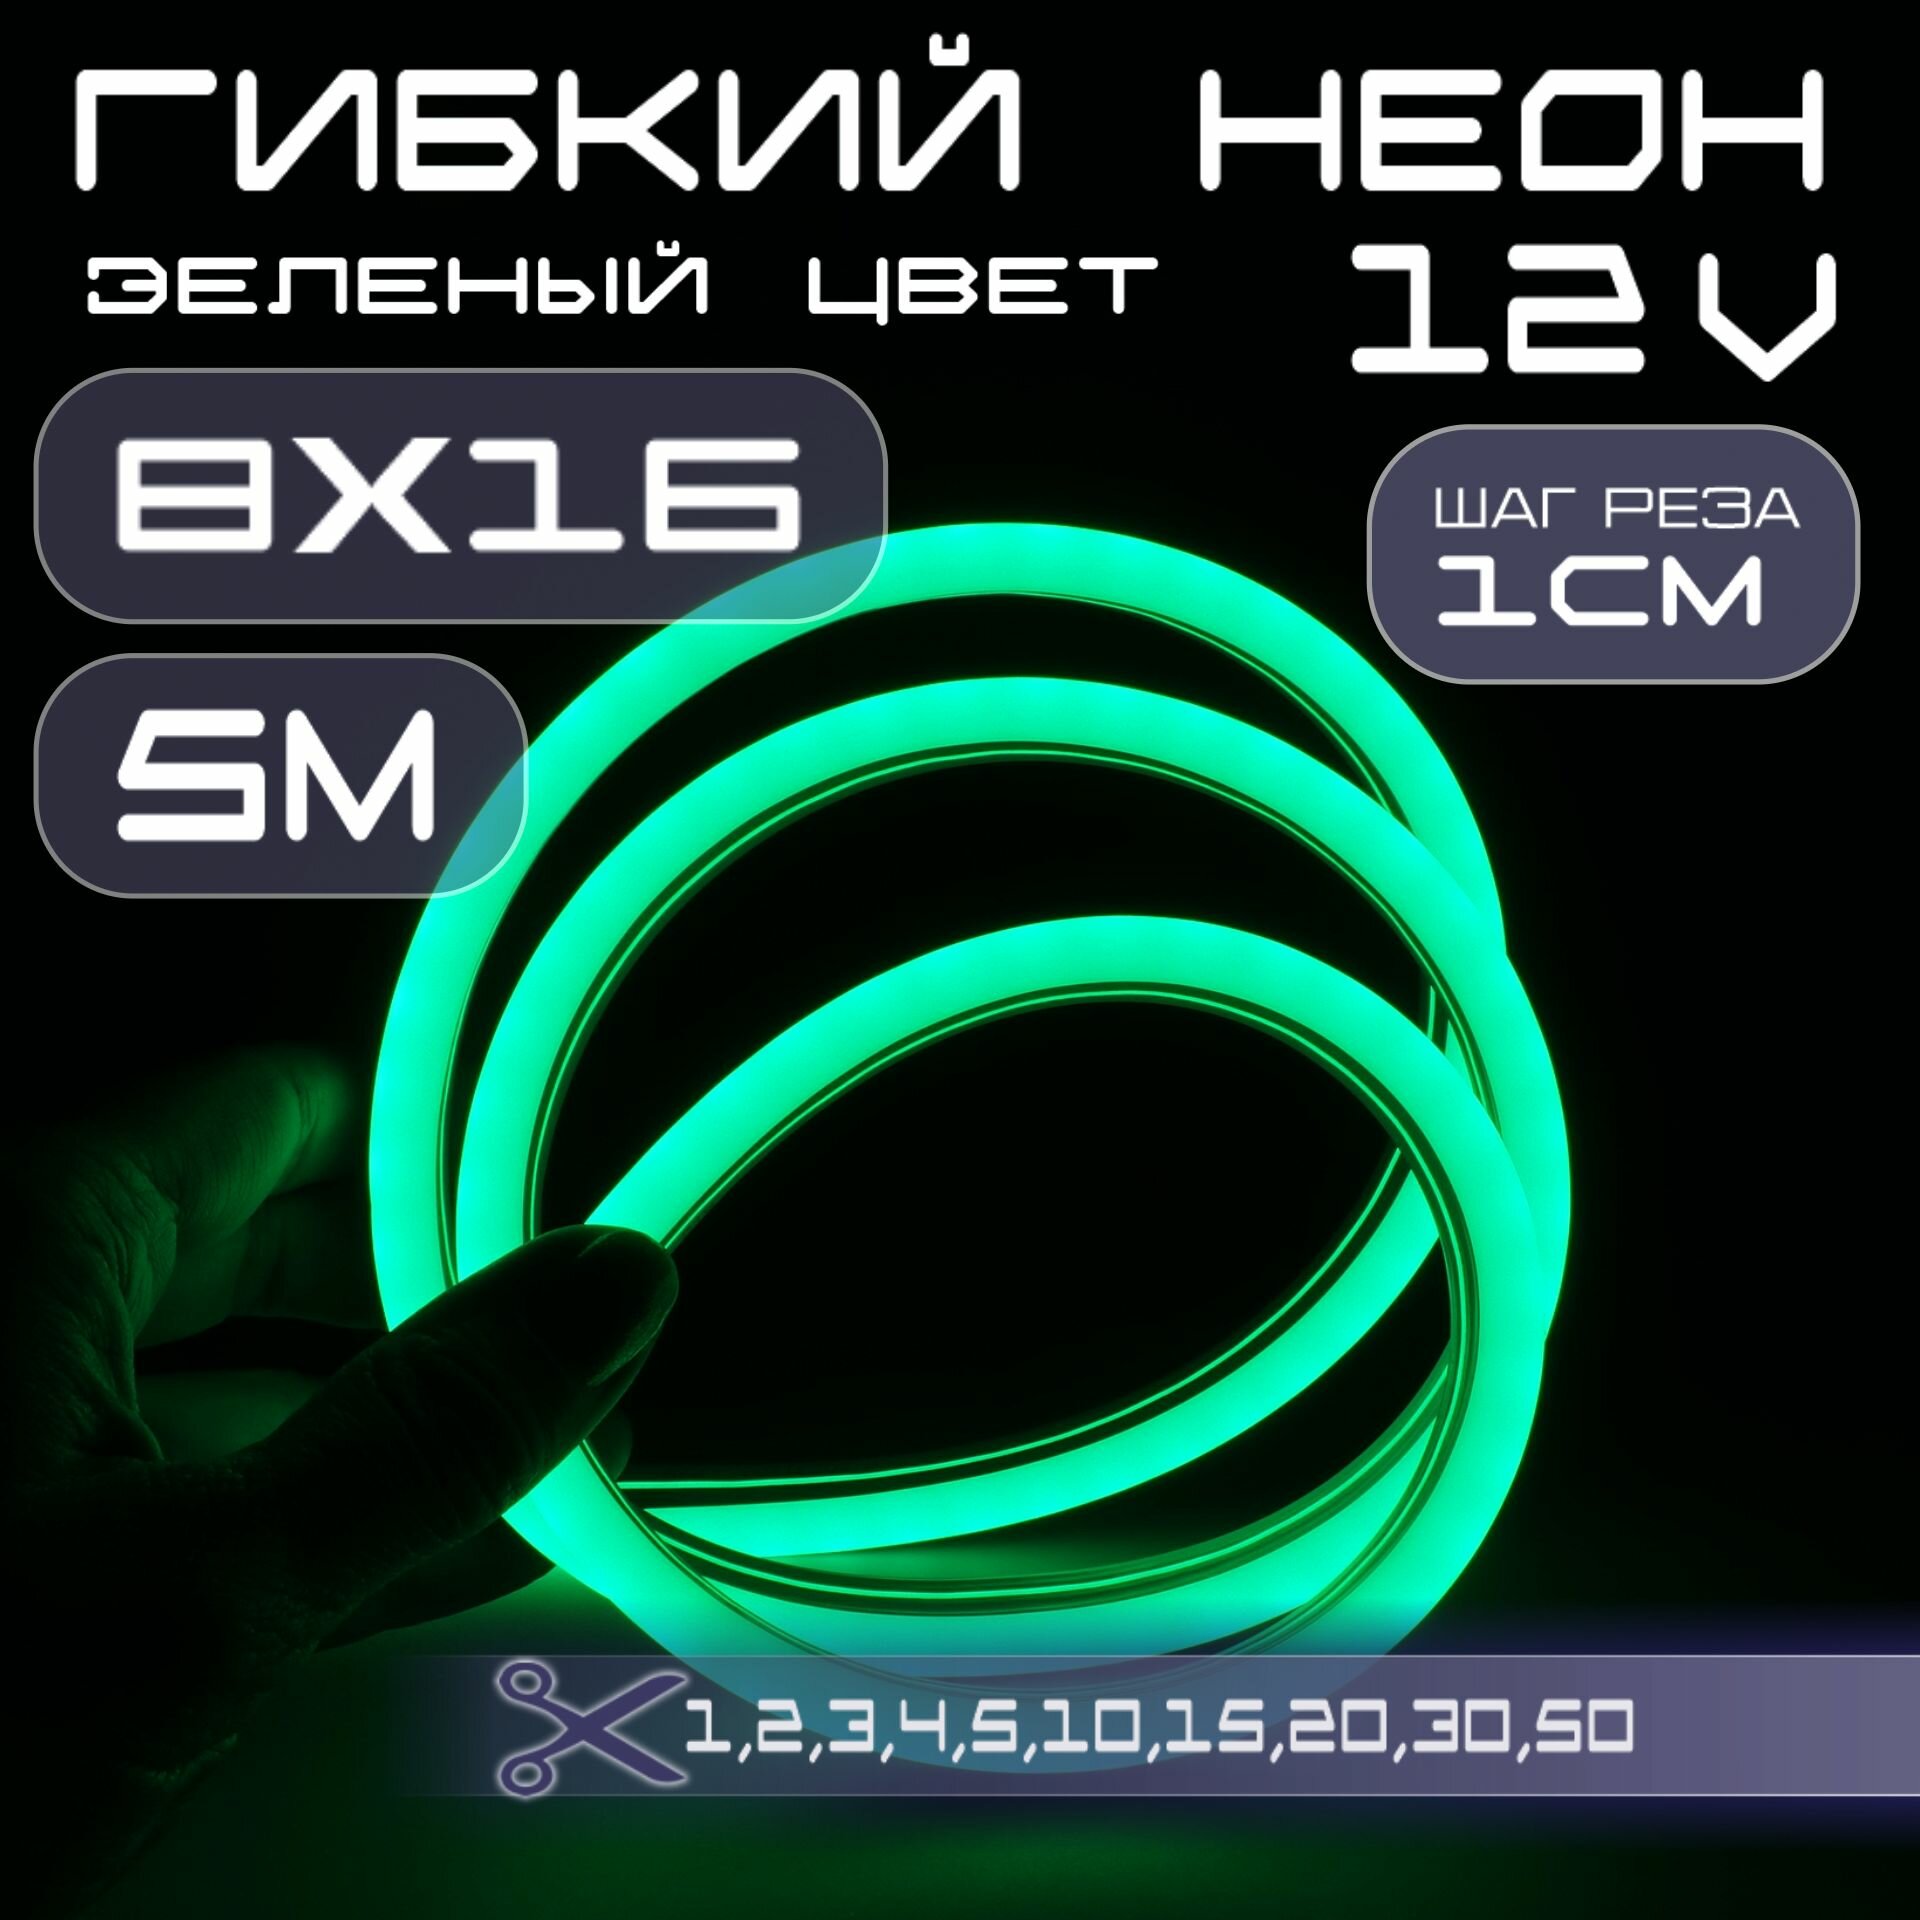 Гибкий неон 12V зеленый 8х16, 10W, 110 Led, IP67 шаг реза 1 см, 5 метров